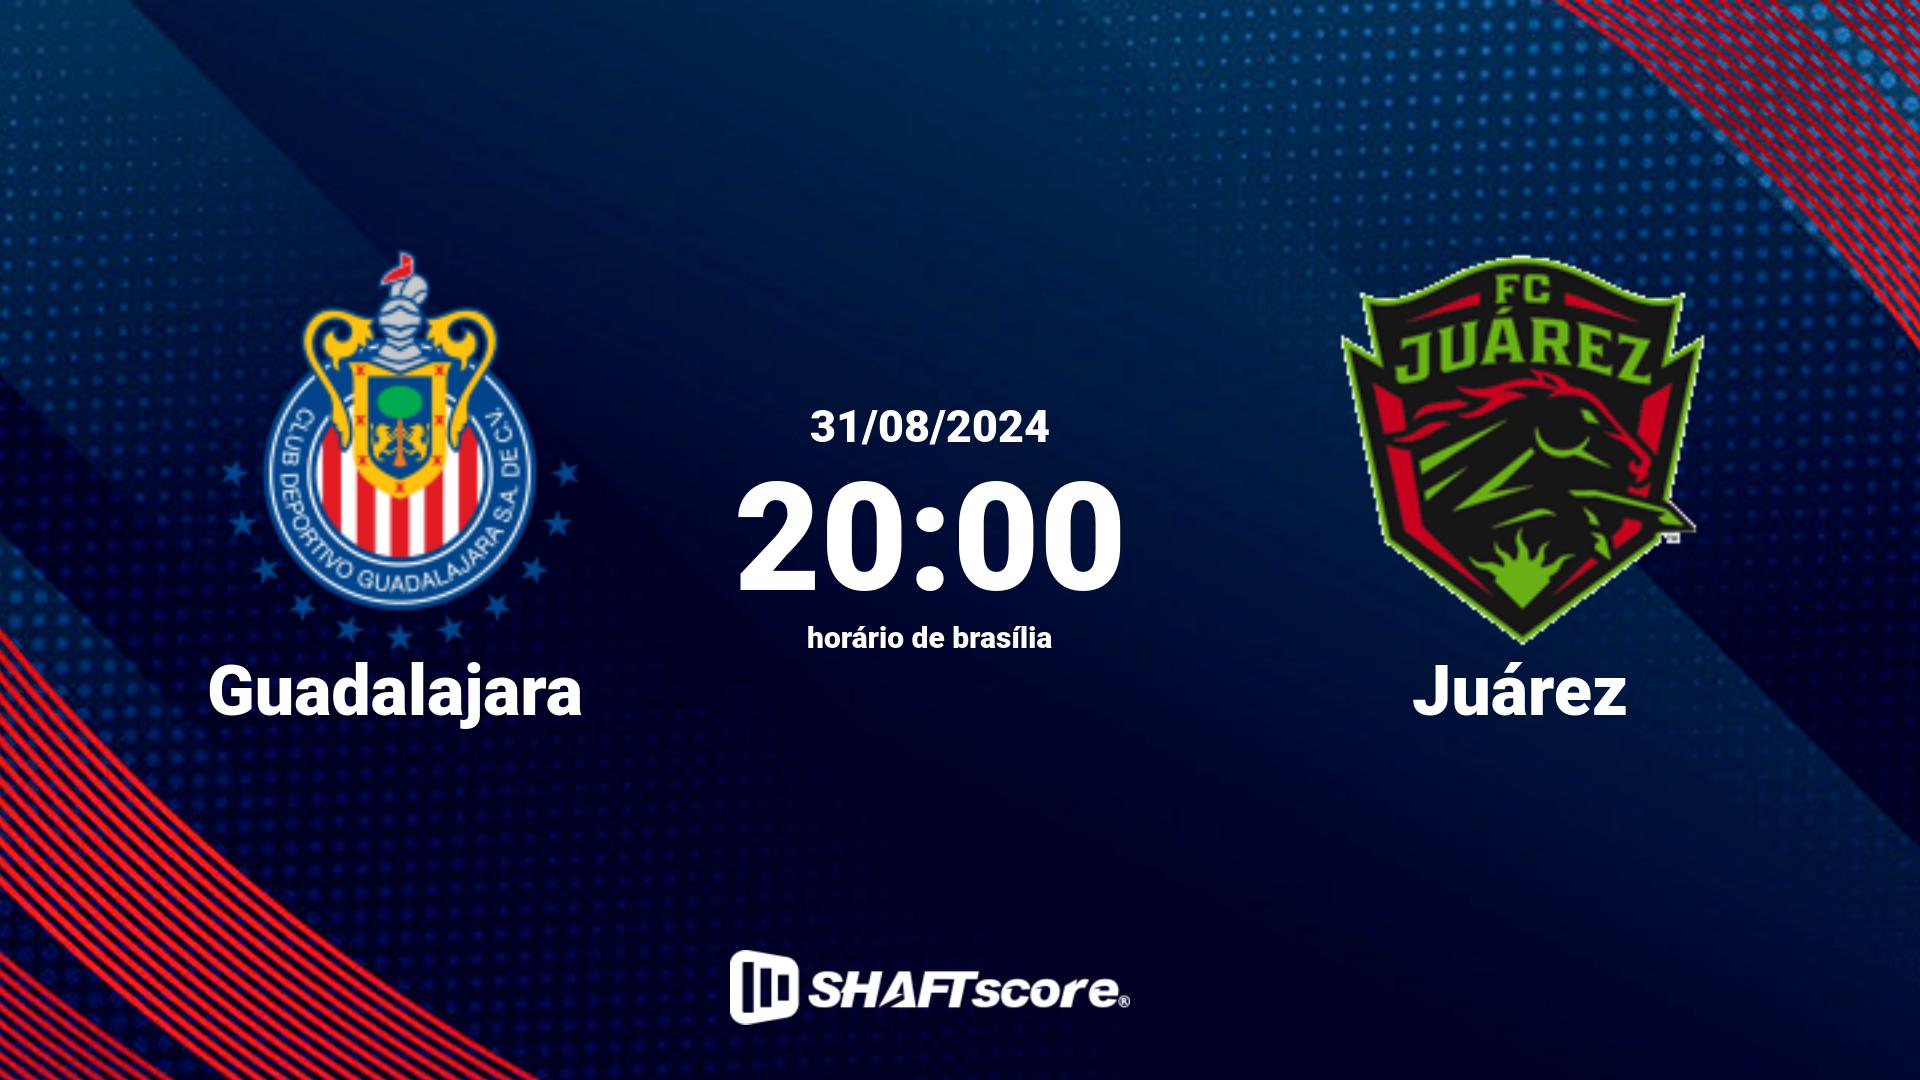 Estatísticas do jogo Guadalajara vs Juárez 31.08 20:00